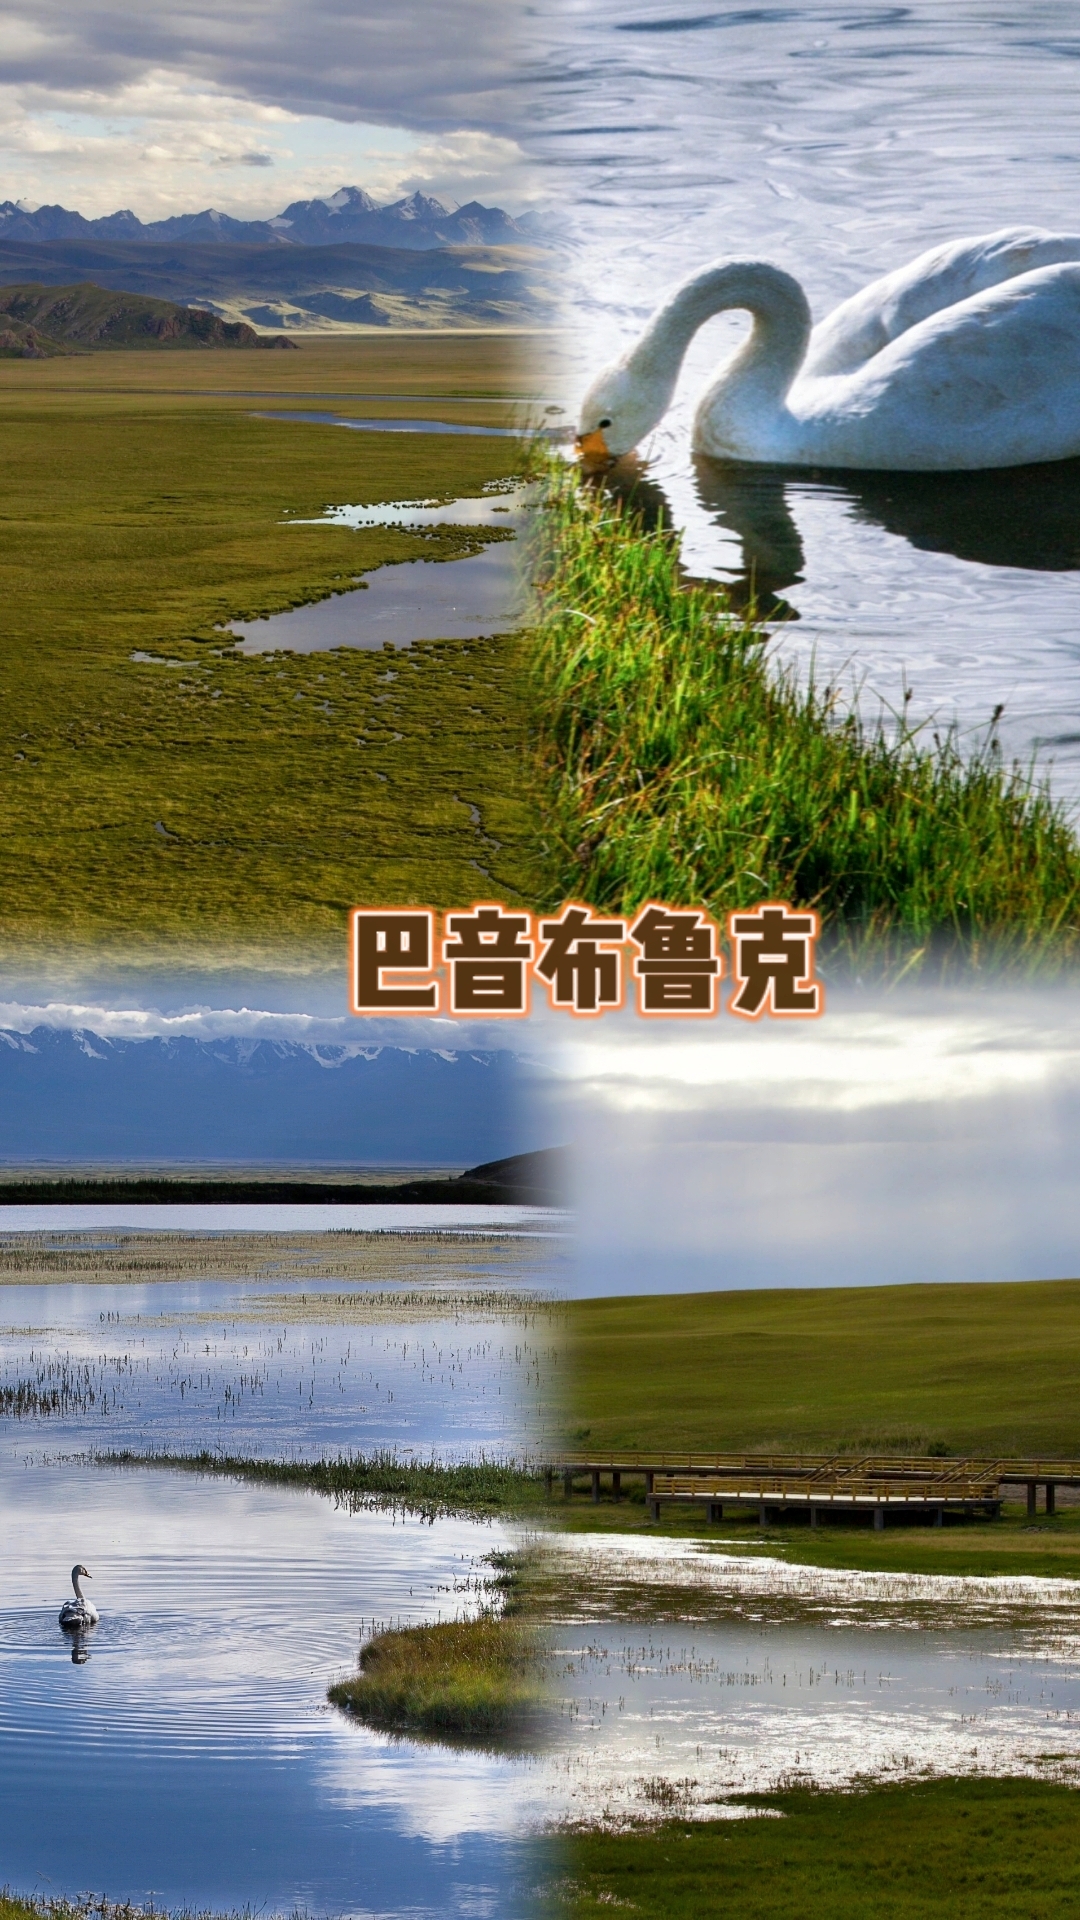 ✨巴音布鲁克草原：韩寒电影《飞驰人生》取景地就在这儿！😄 🌾这片辽阔无边的巴音布鲁克草原上，还有着清